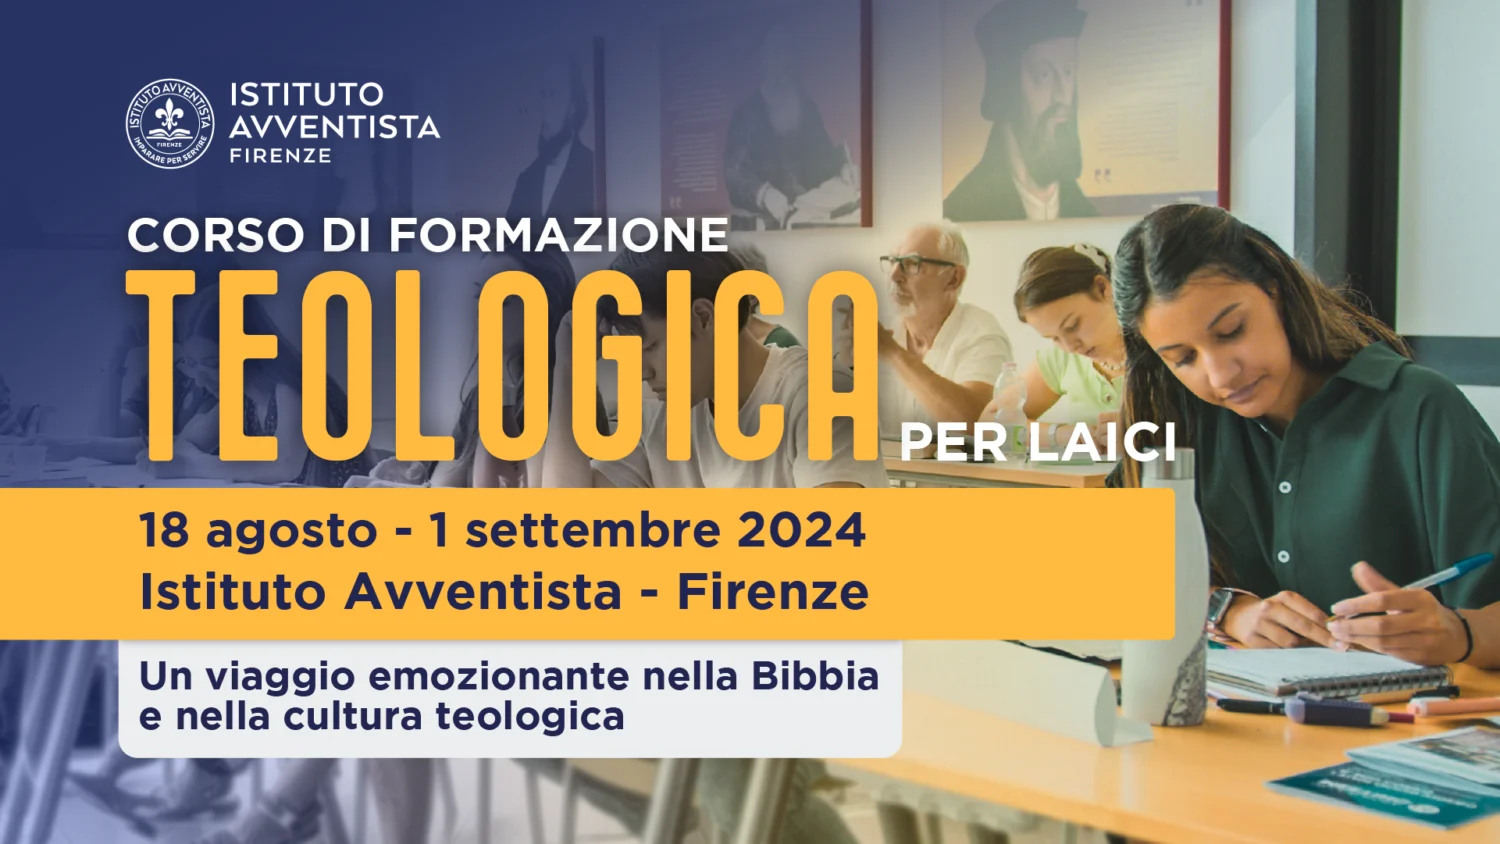 Corso estivo di formazione teologica per laici. 18 agosto 1 settembre 2024 a Firenze